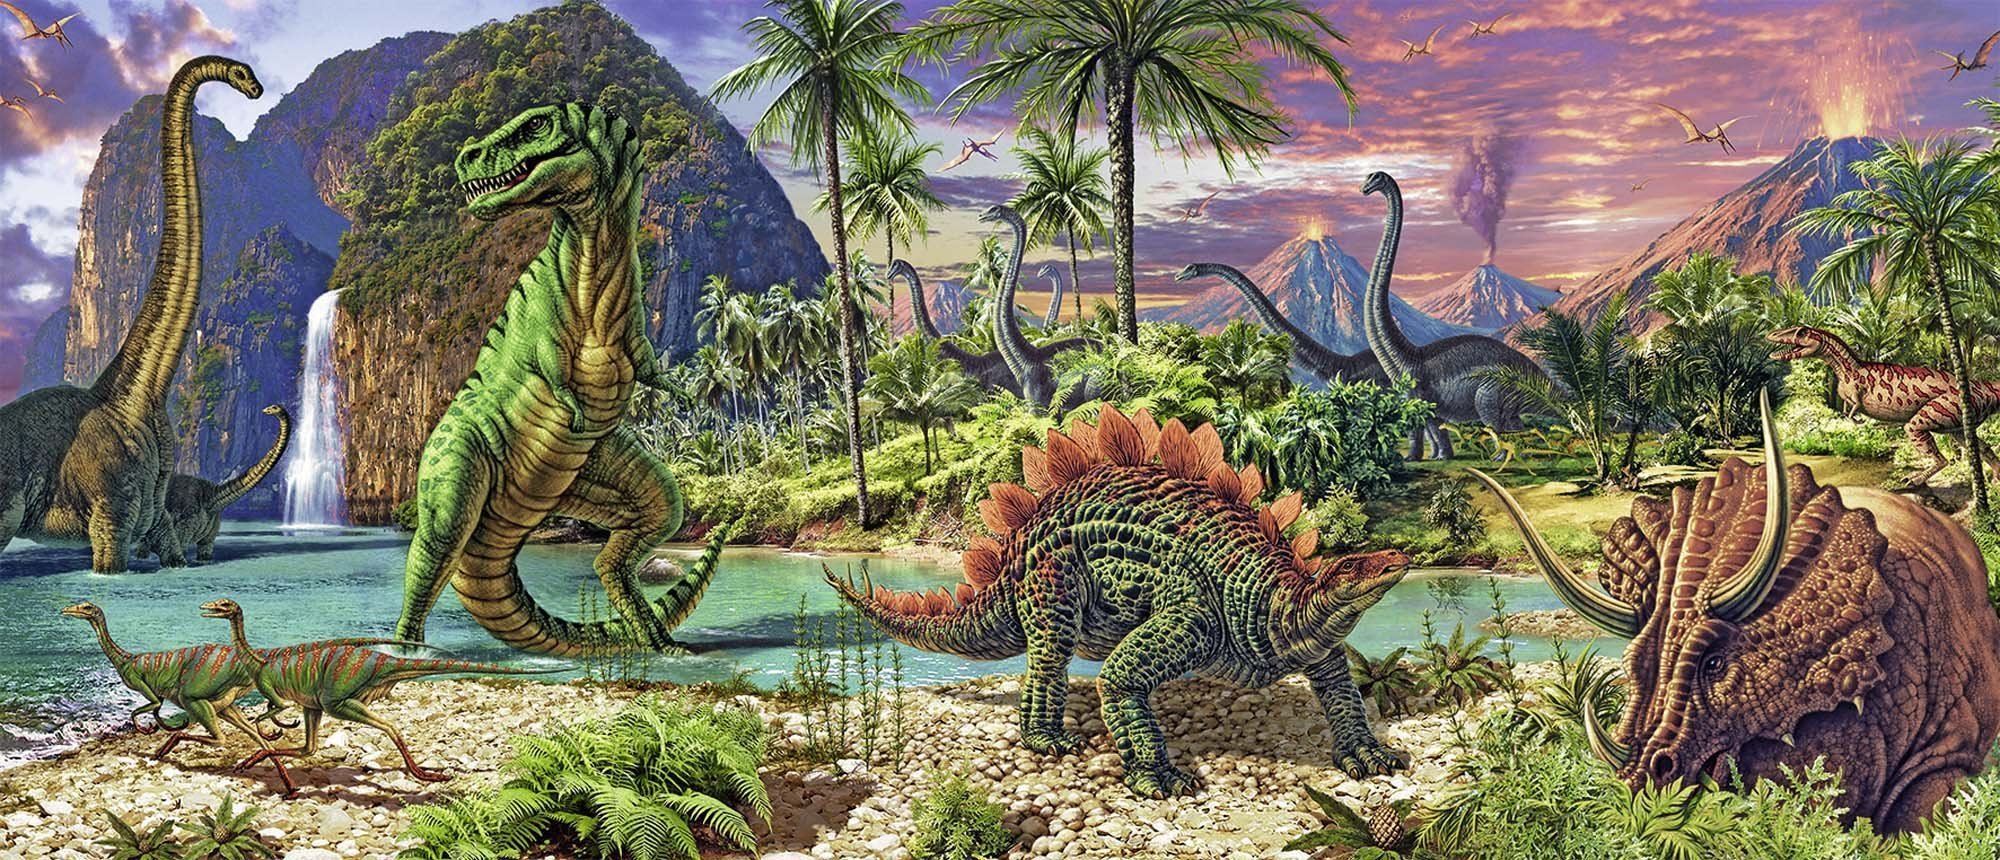 Семейка юрского периода. Динозавры Юрского периода. Горы Юра Юрский период. Джен Грин "мир динозавров". Пейзаж с динозаврами.